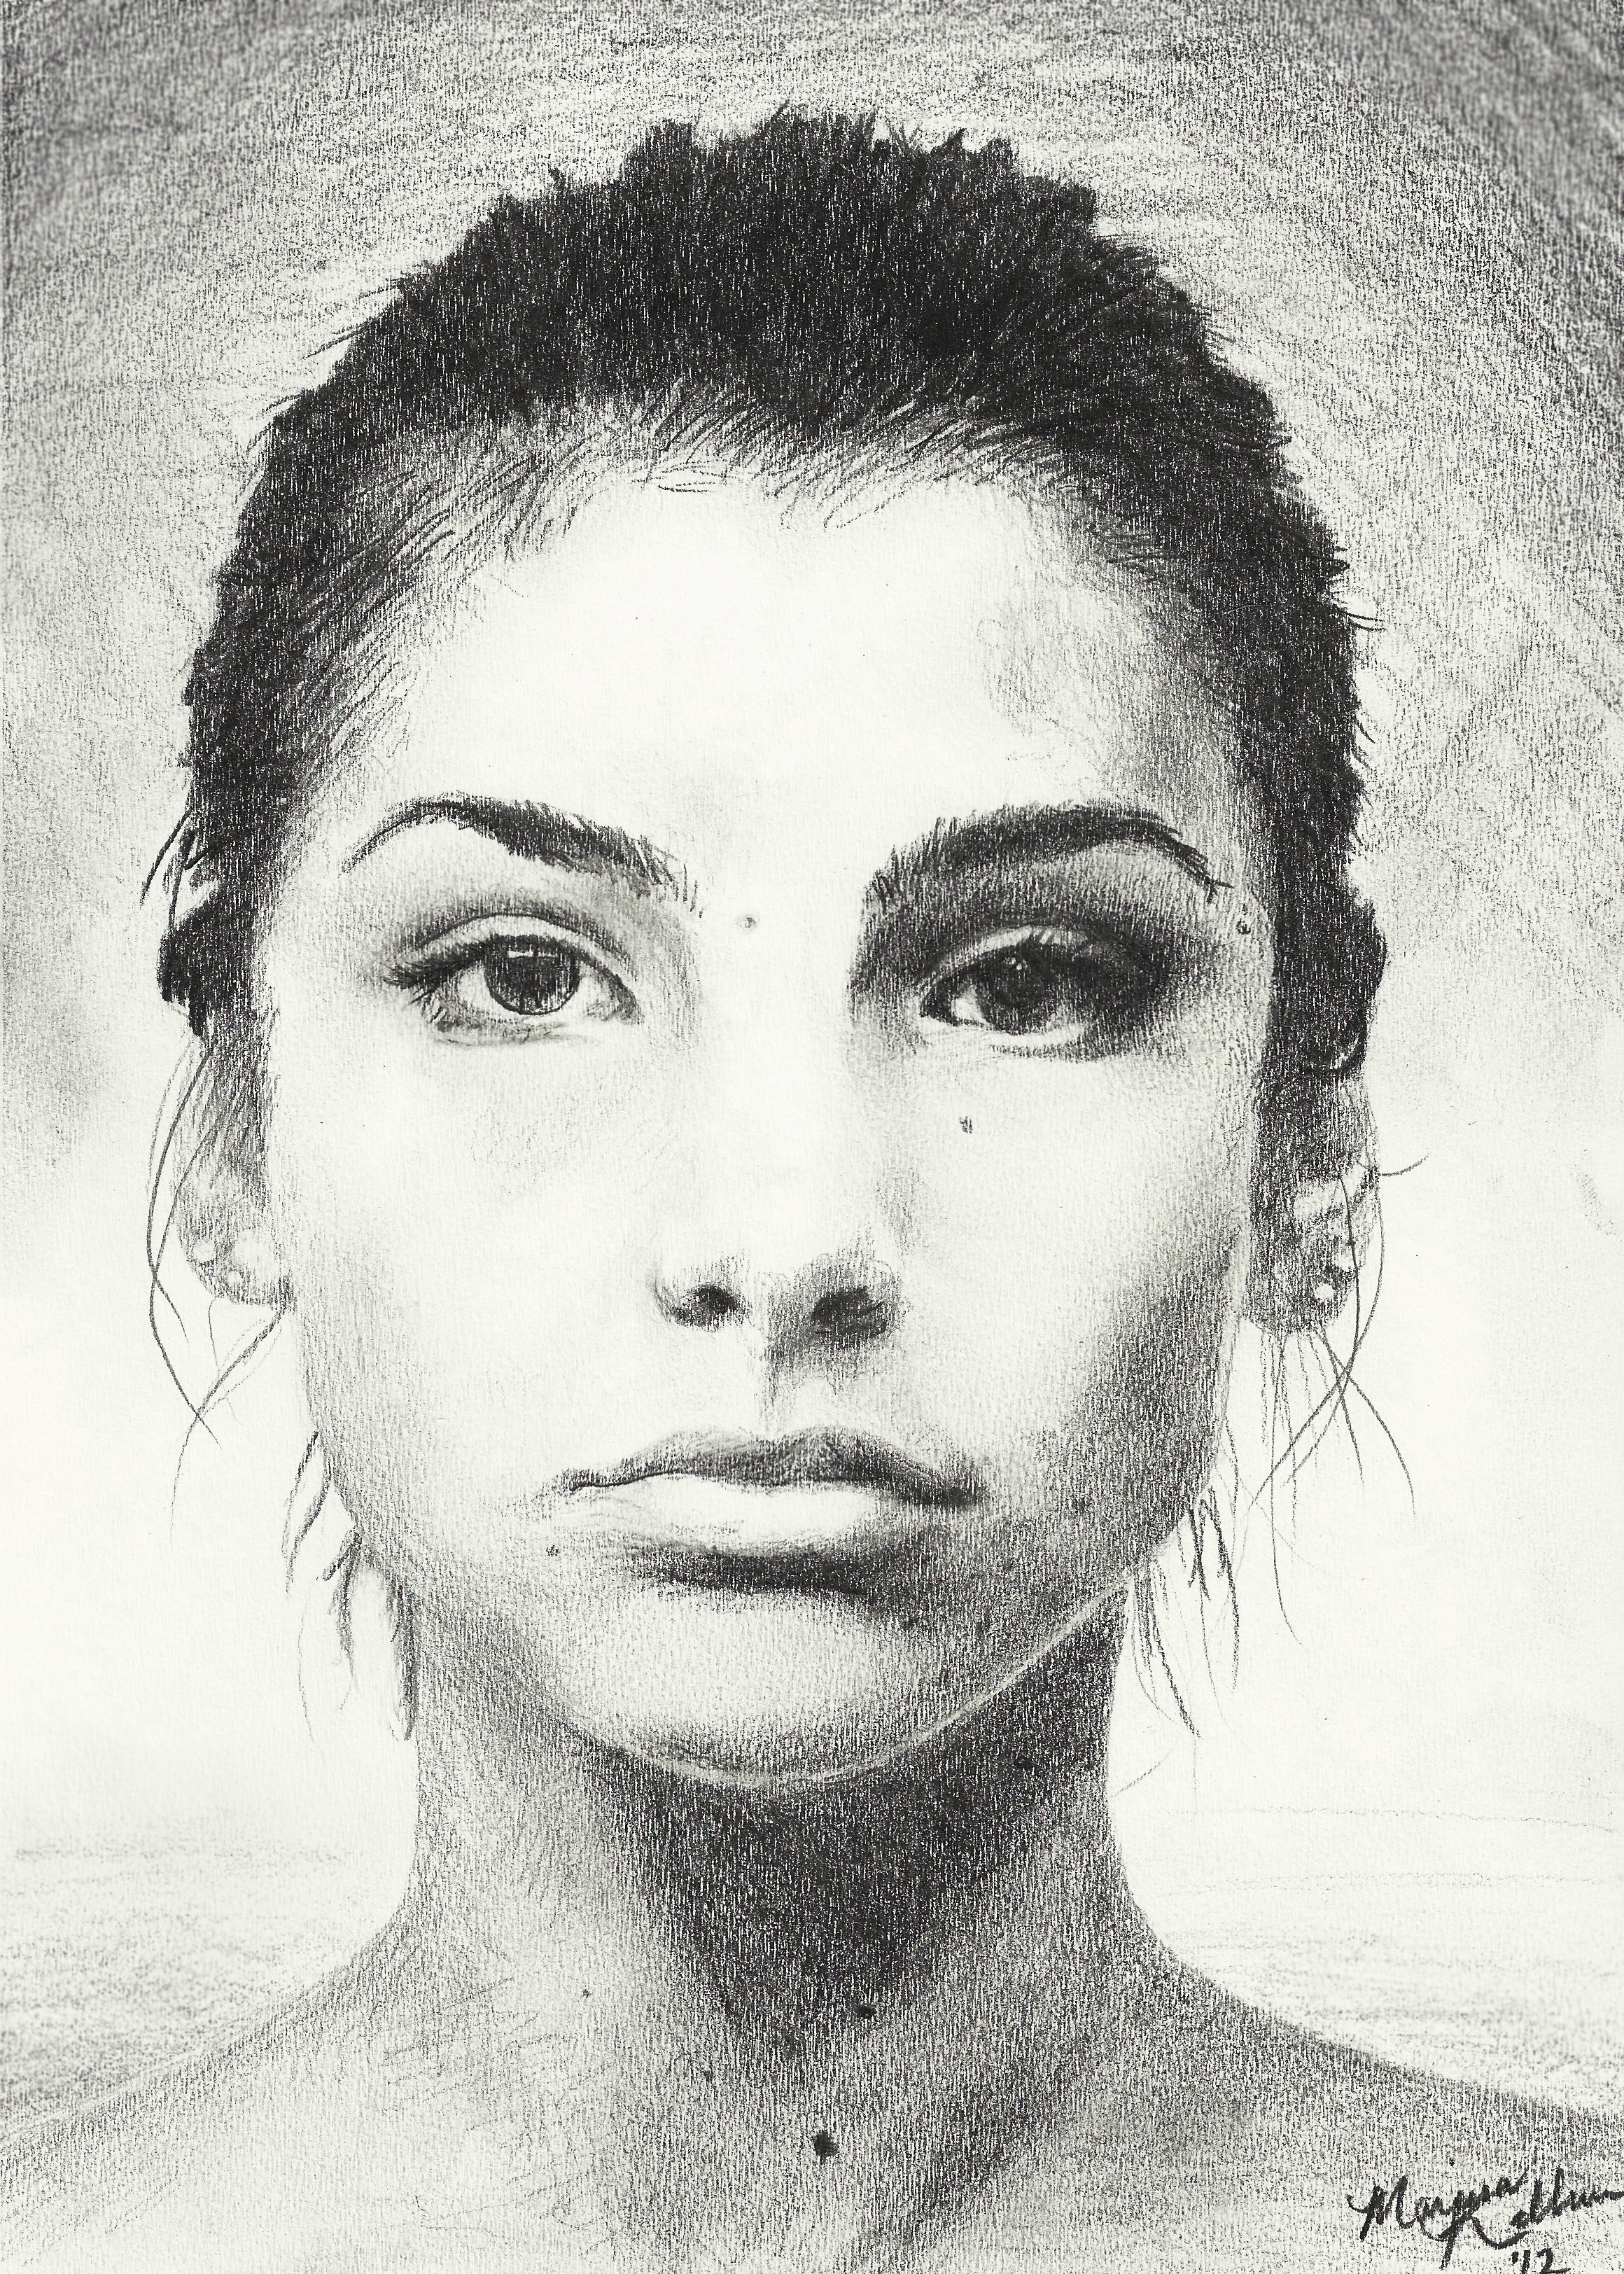 Self Portrait in Pencil by Leoplurodon16 on DeviantArt